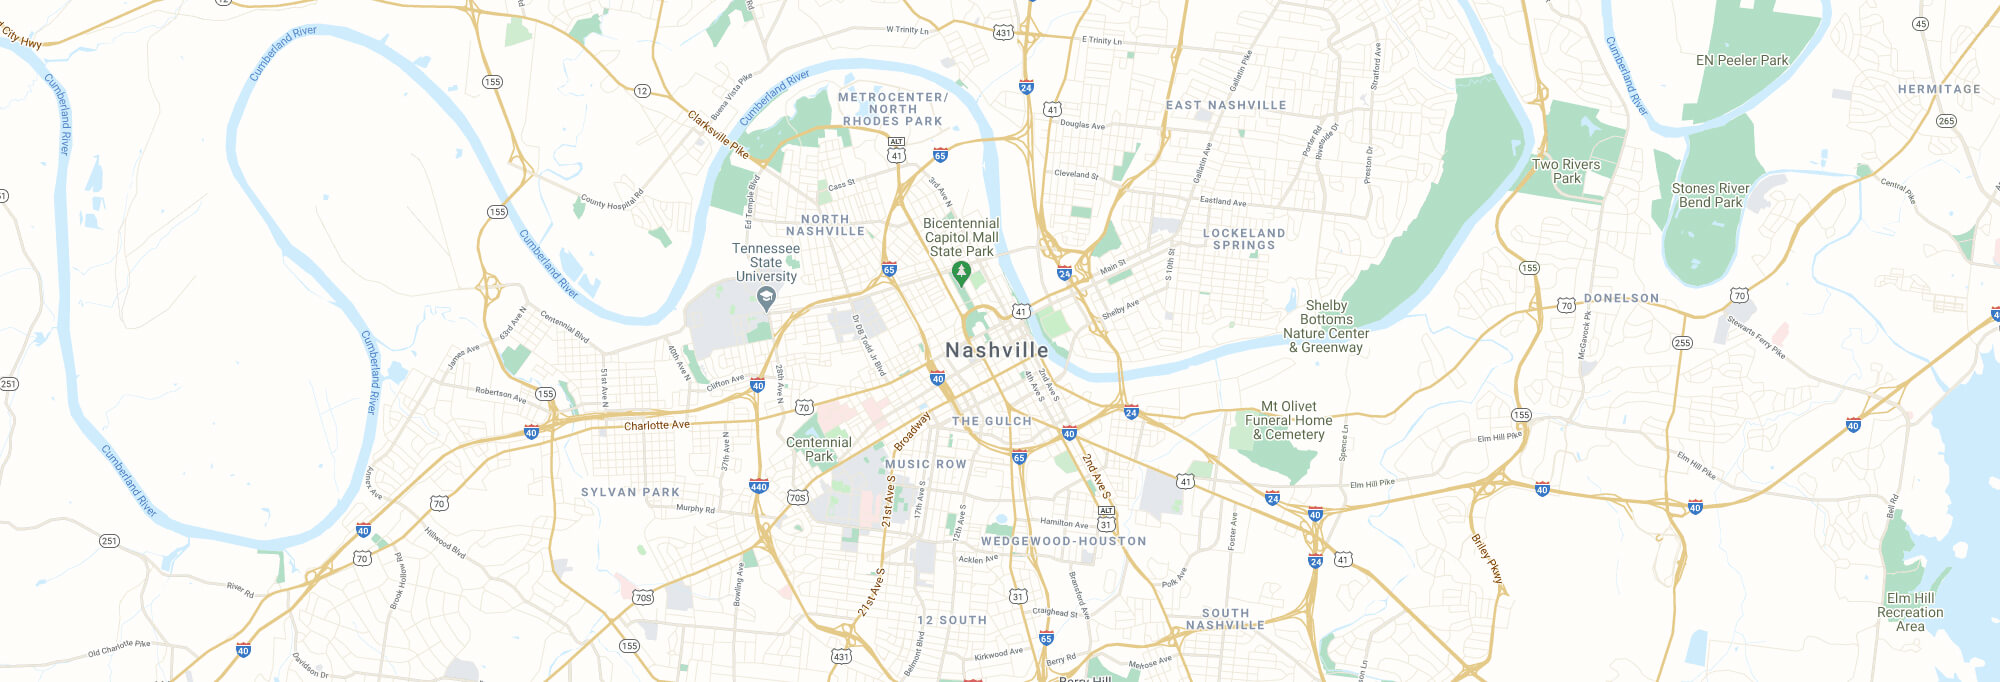 Nashville city map